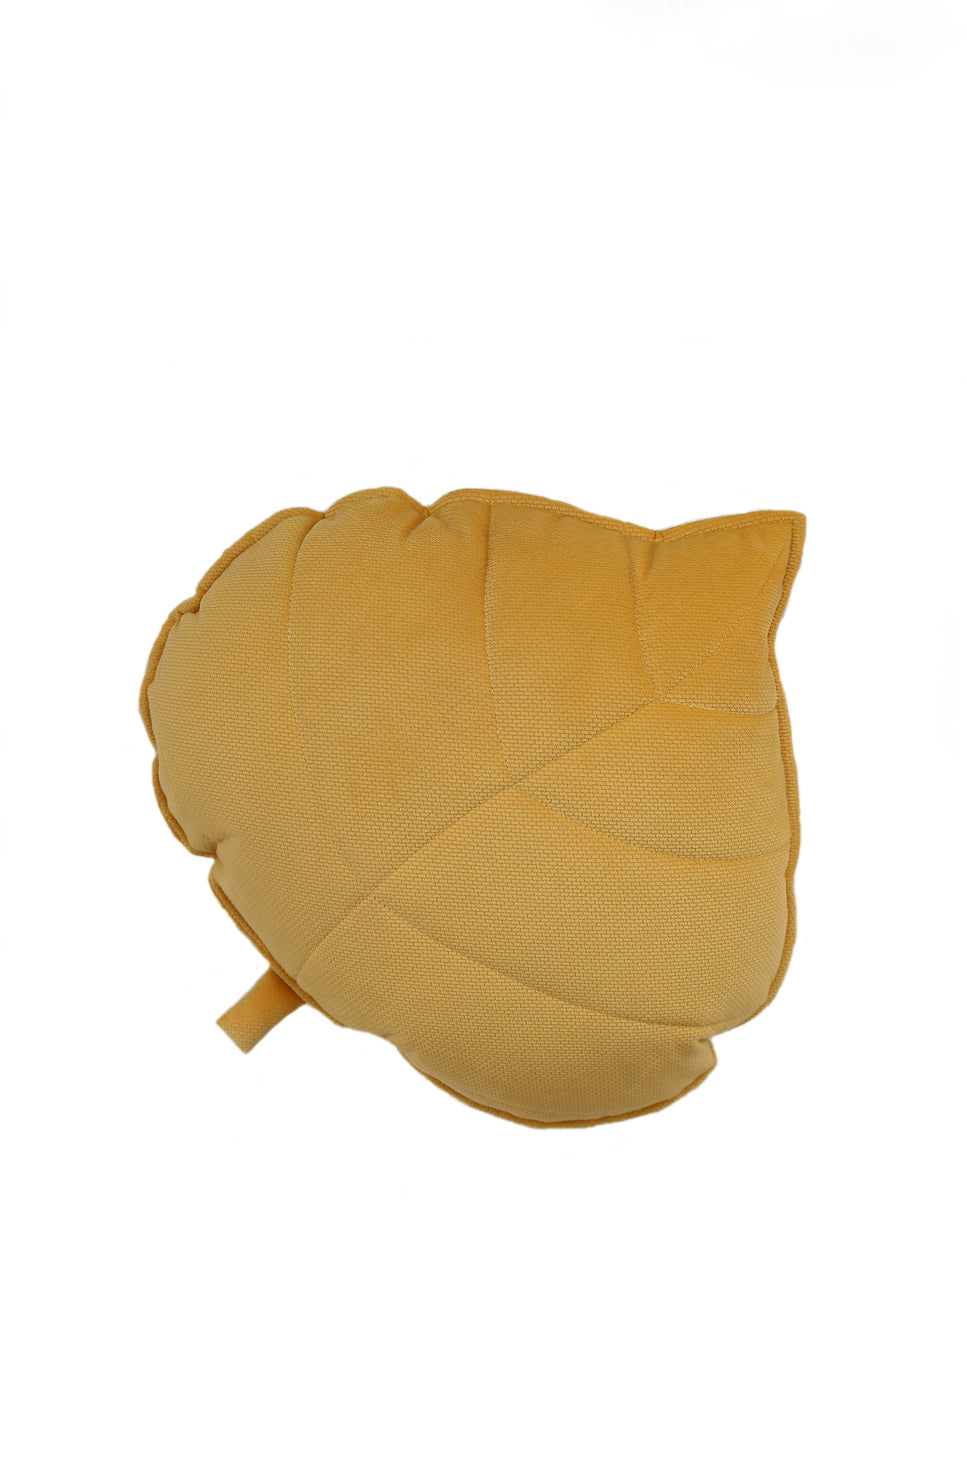 Velvet “Honey” Leaf Pillow